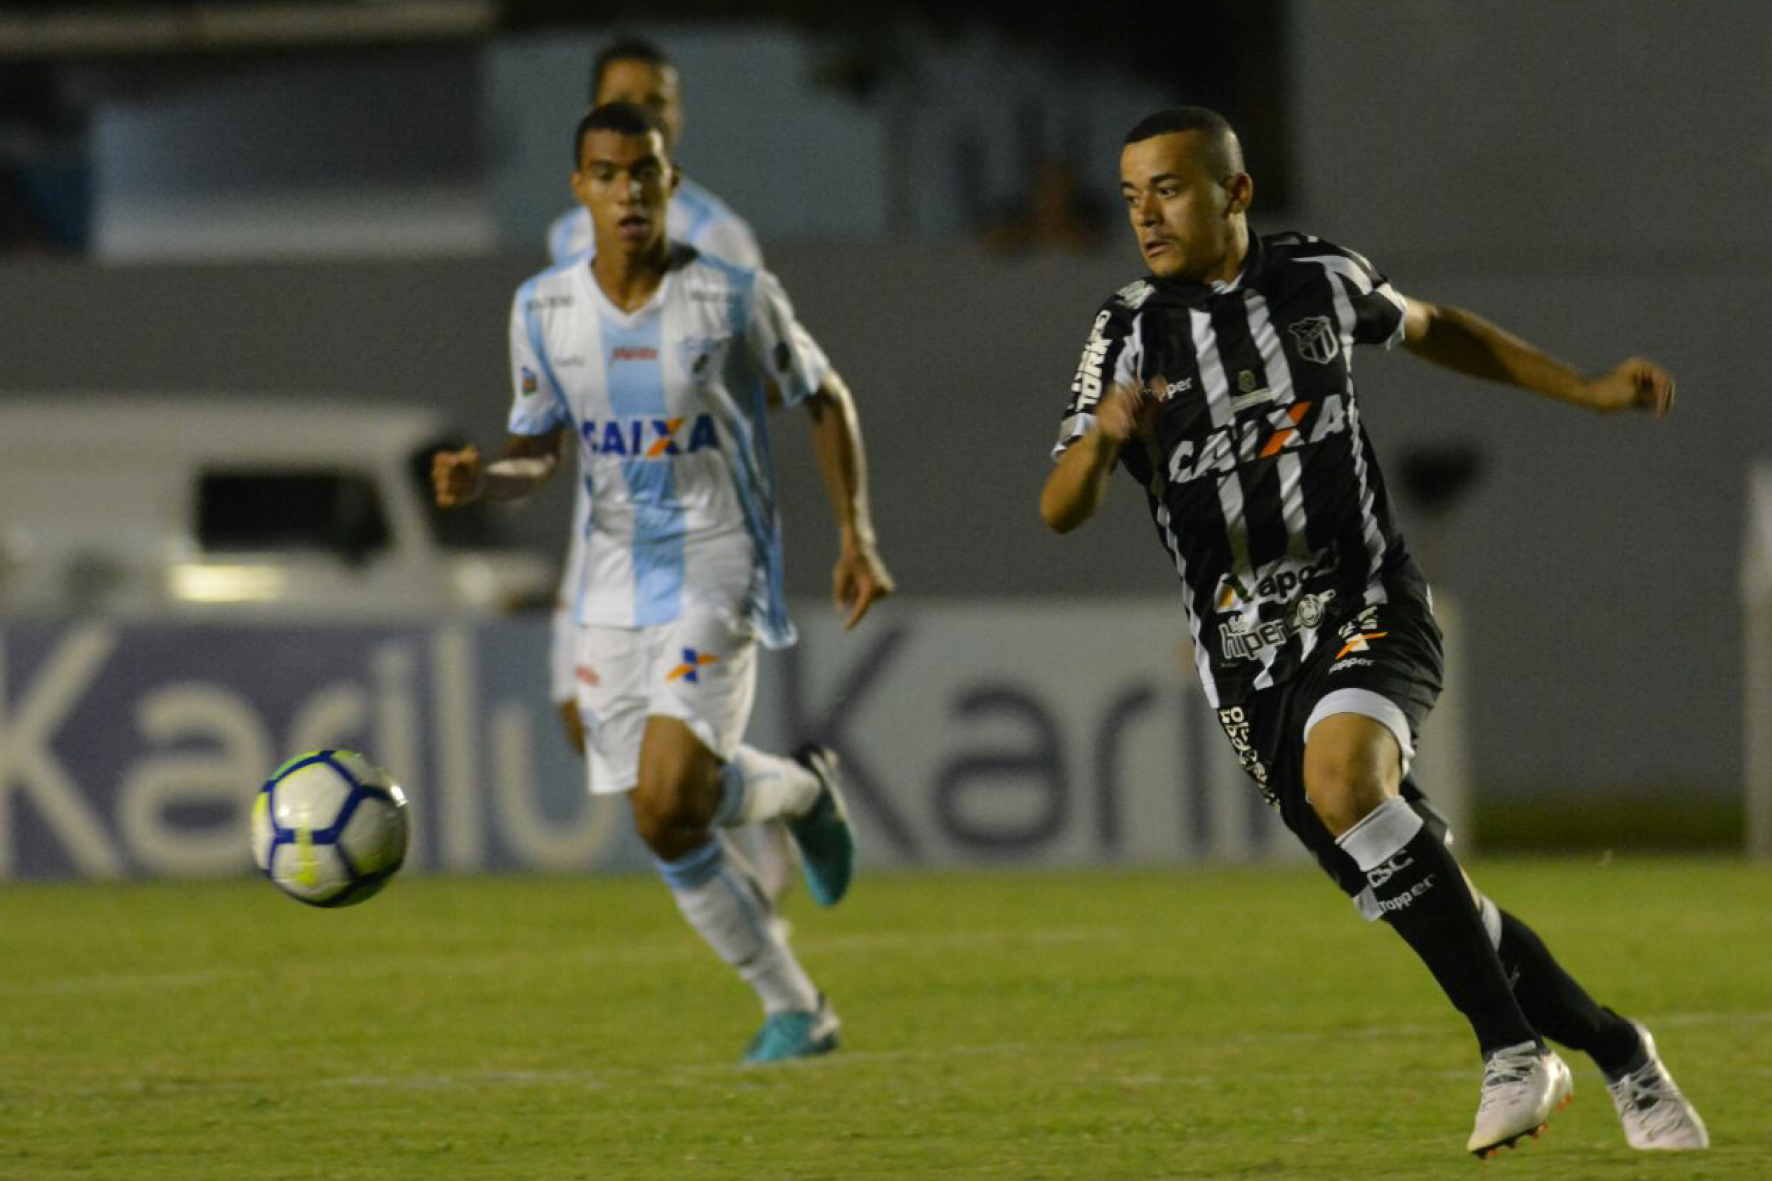 Nos acréscimos, Ceará bate o Londrina de virada e avança de fase na Copa do Brasil